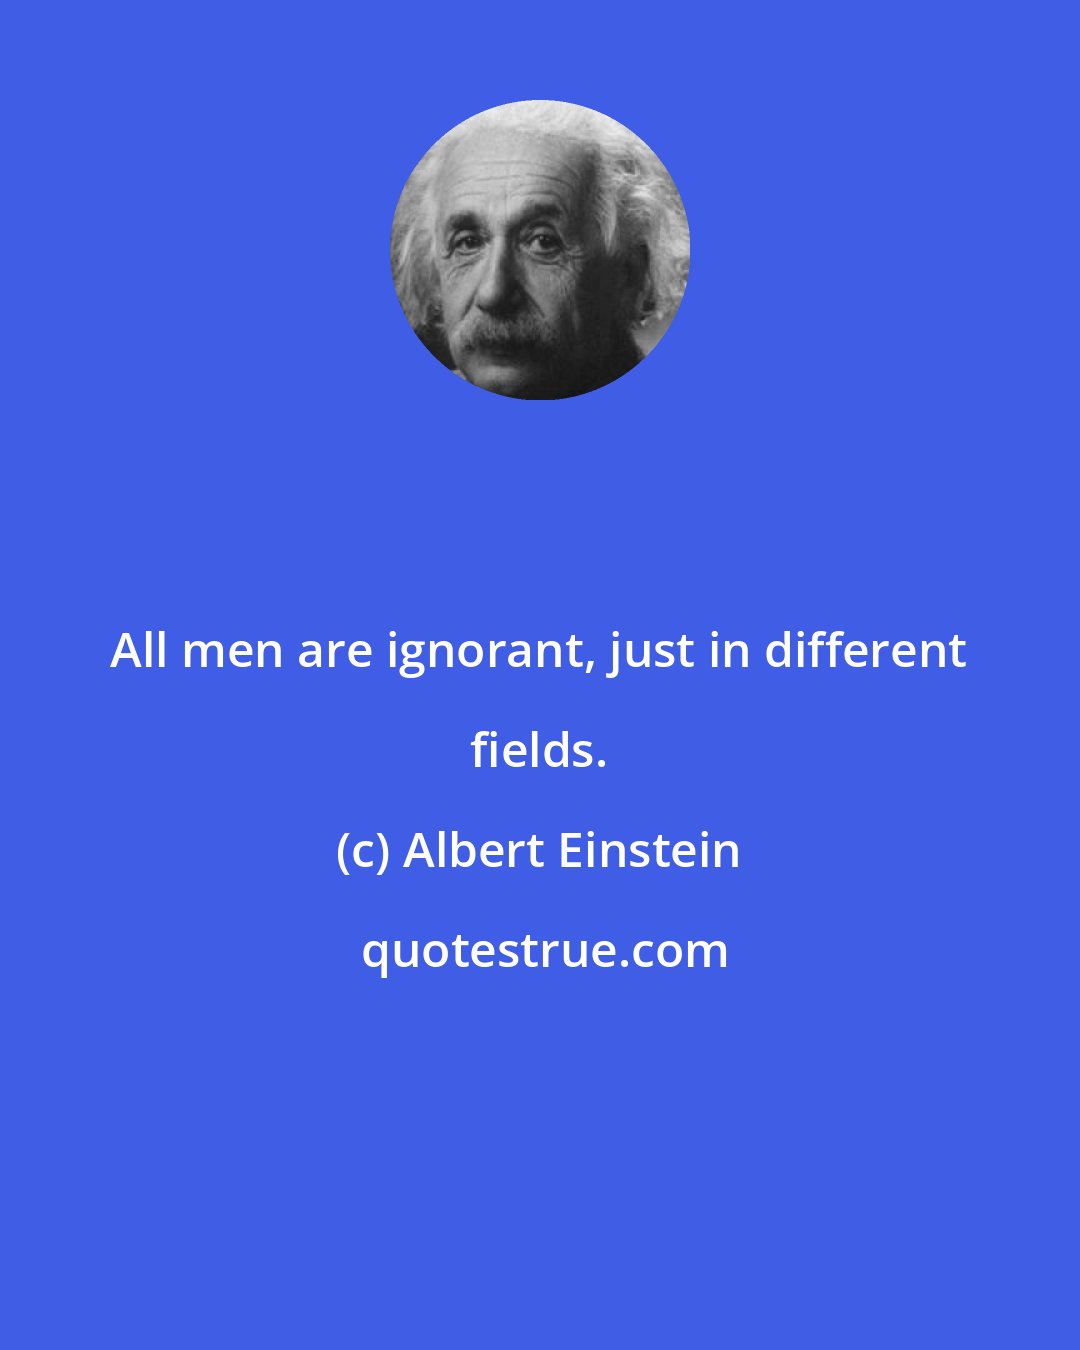 Albert Einstein: All men are ignorant, just in different fields.